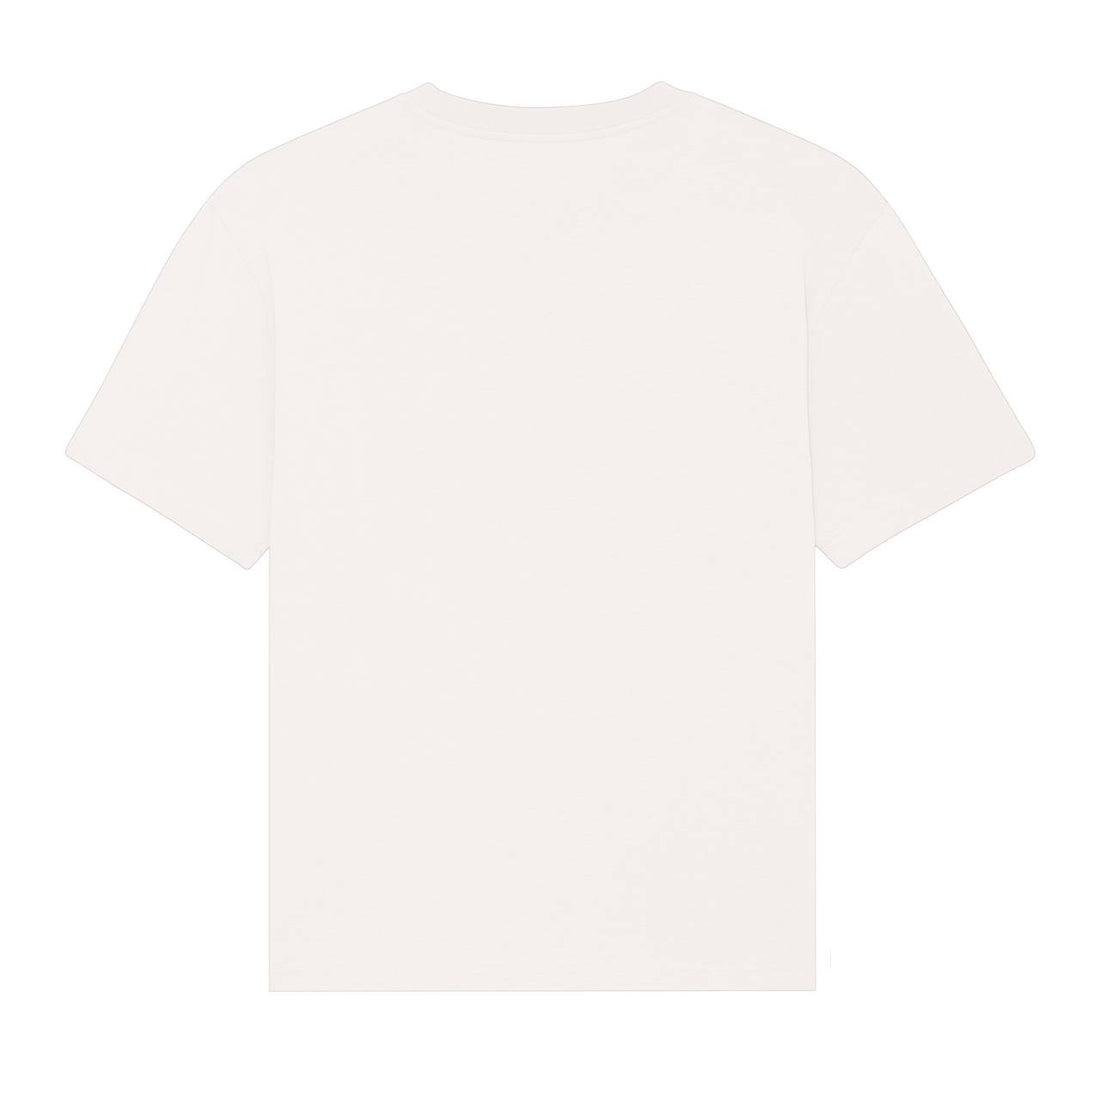 Morten - ETCi Shirt